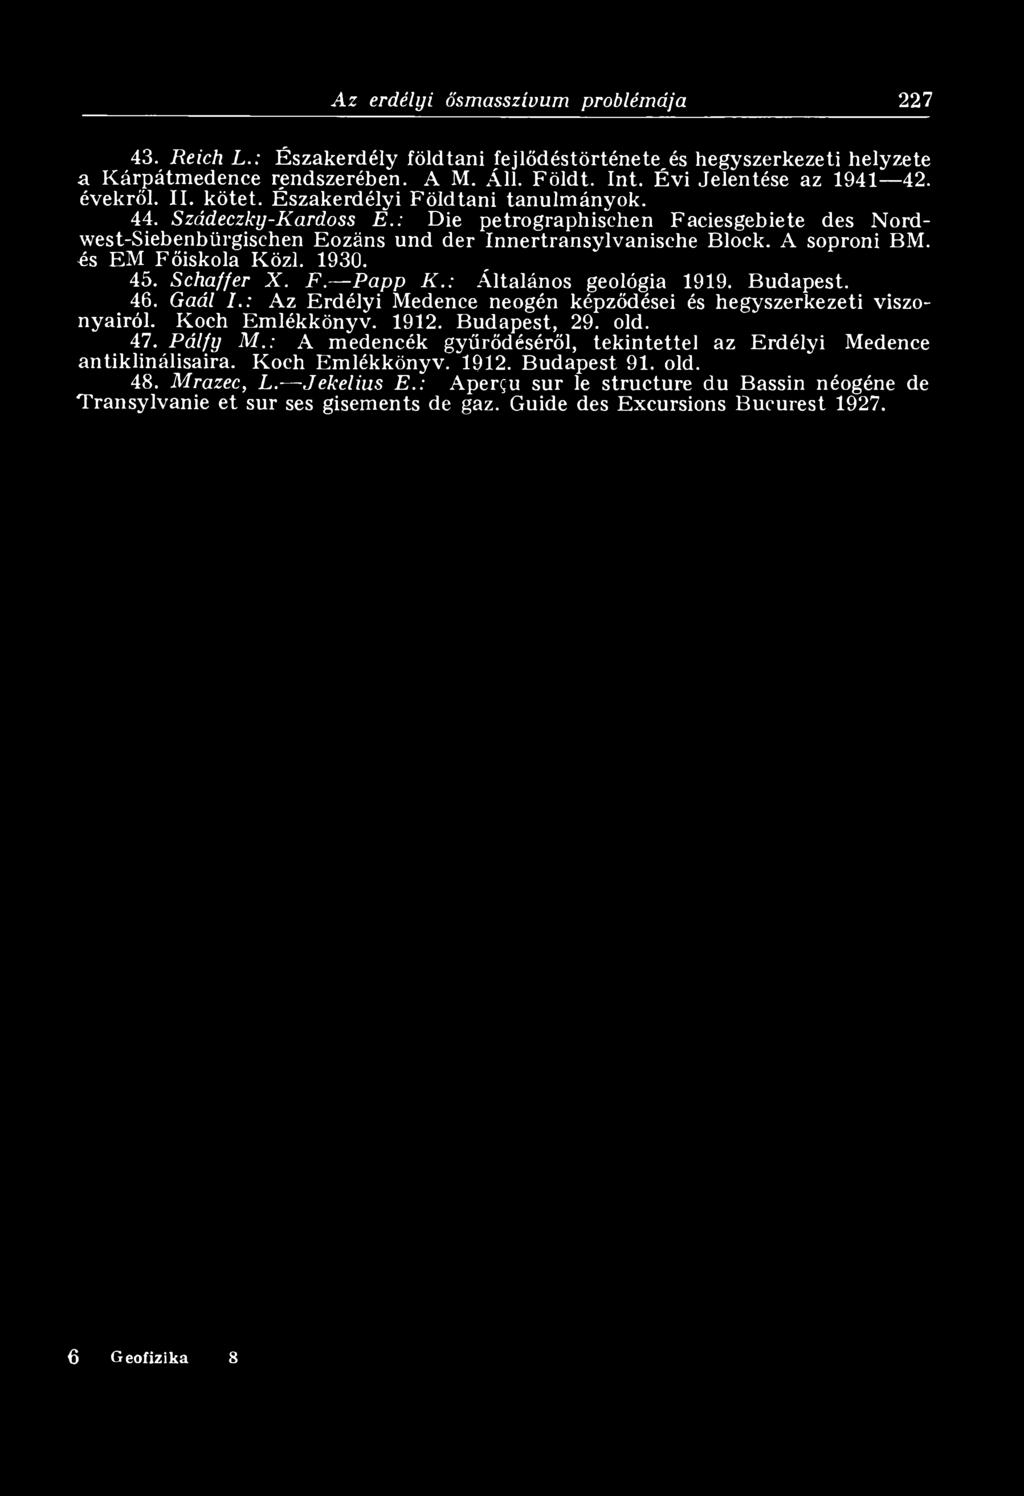 A soproni BM. és EM Főiskola Közi. 1930. 45. Schaffer X. F. Papp К.: Általános geológia 1919. Budapest. 46. Gaál I.: Az Erdélyi Medence neogén képződései és hegyszerkezeti viszonyairól.